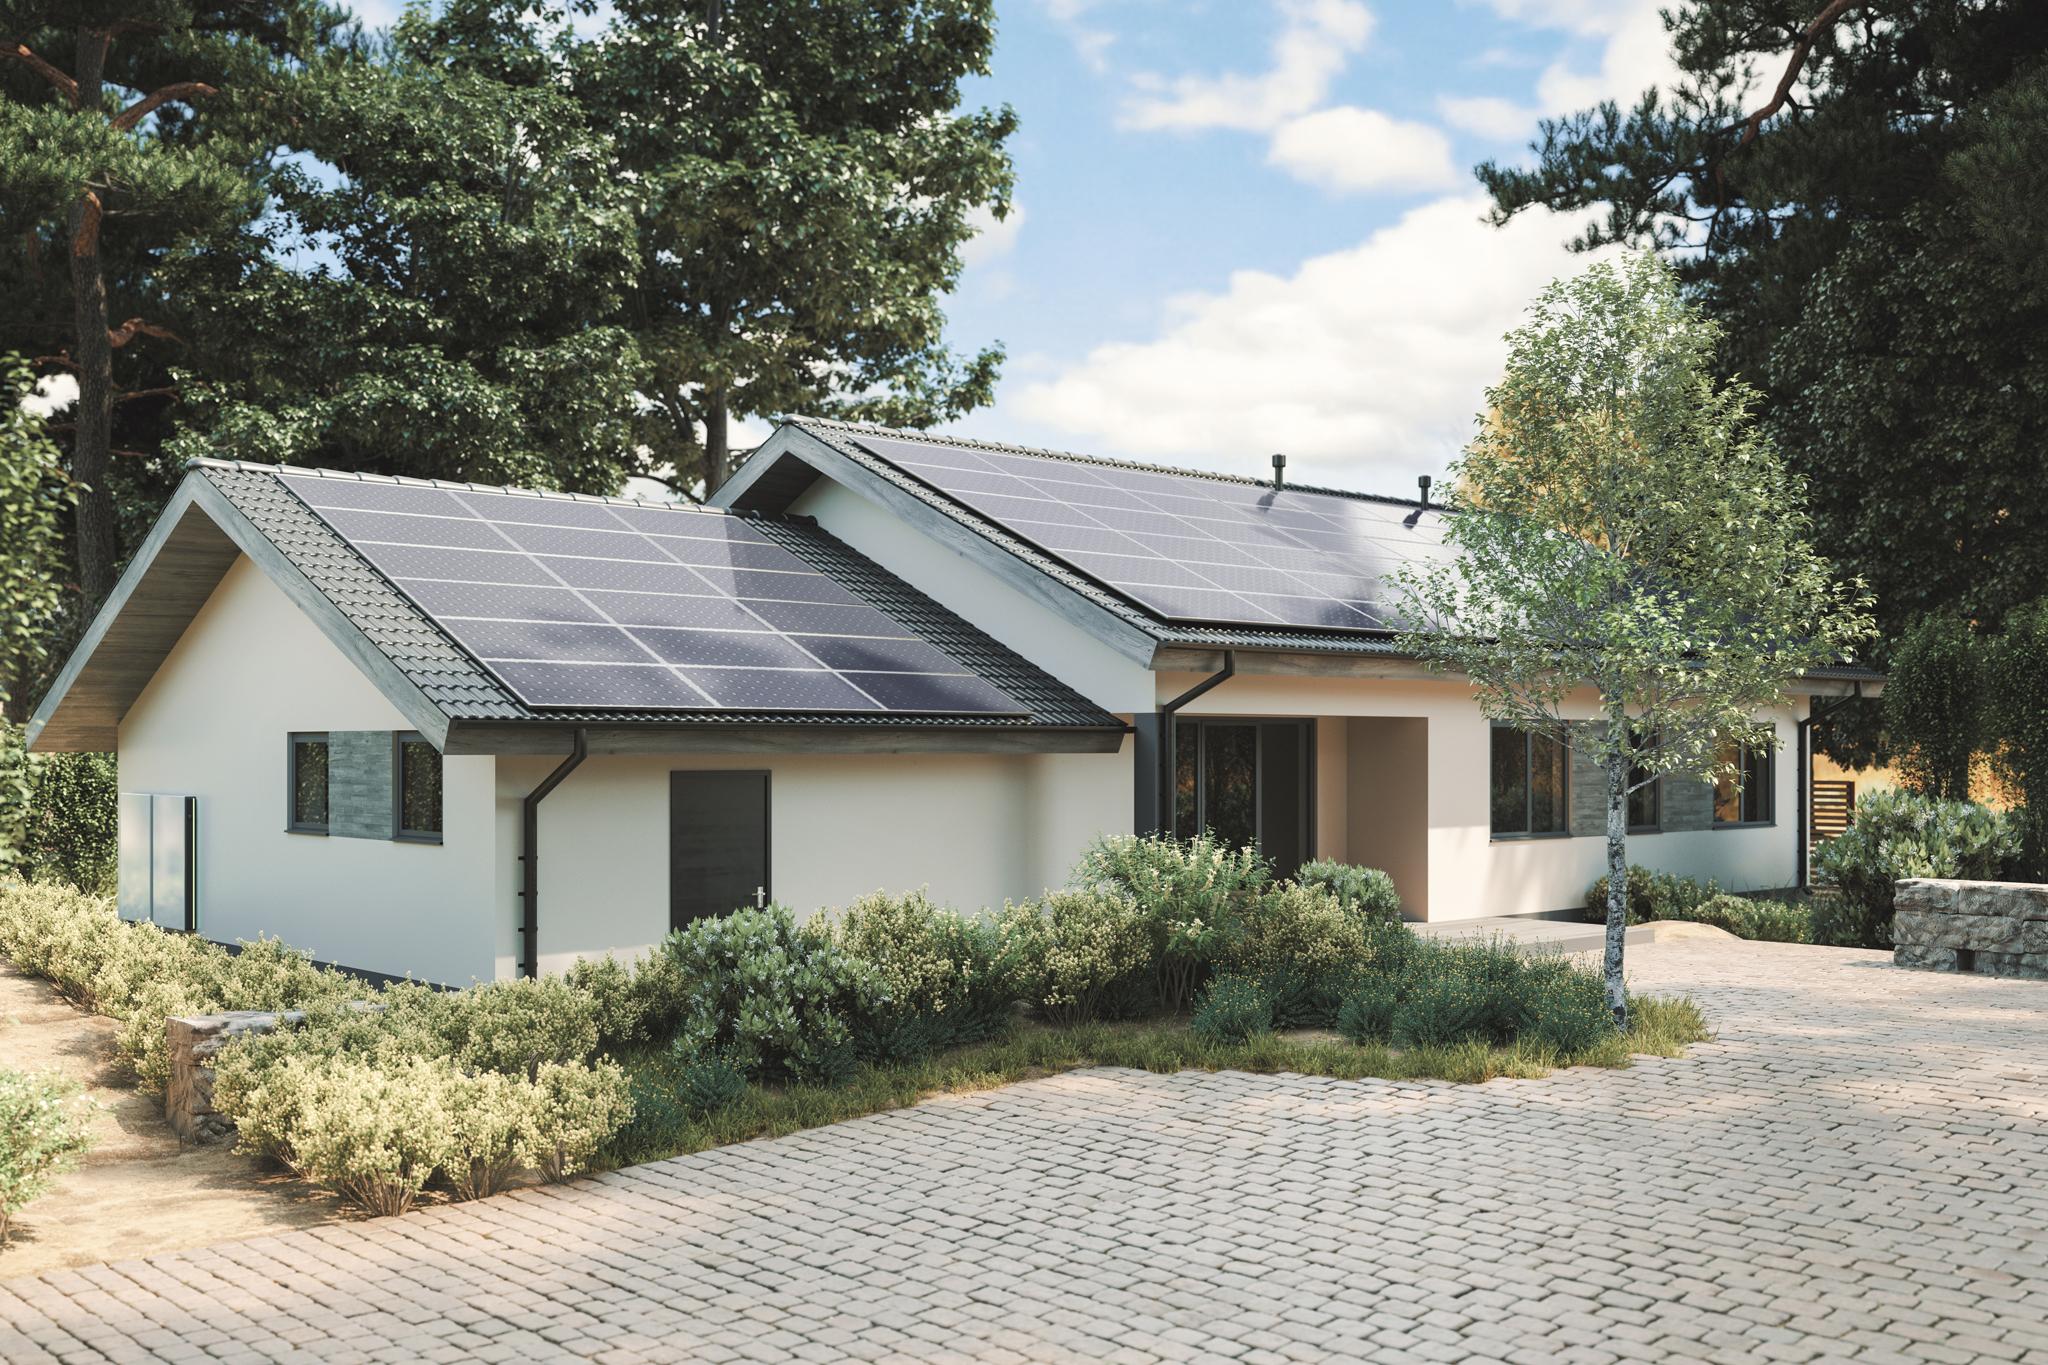 Einfamilienhaus mit PV-Anlage von zolar auf dem Dach - Trends Elektromobilität